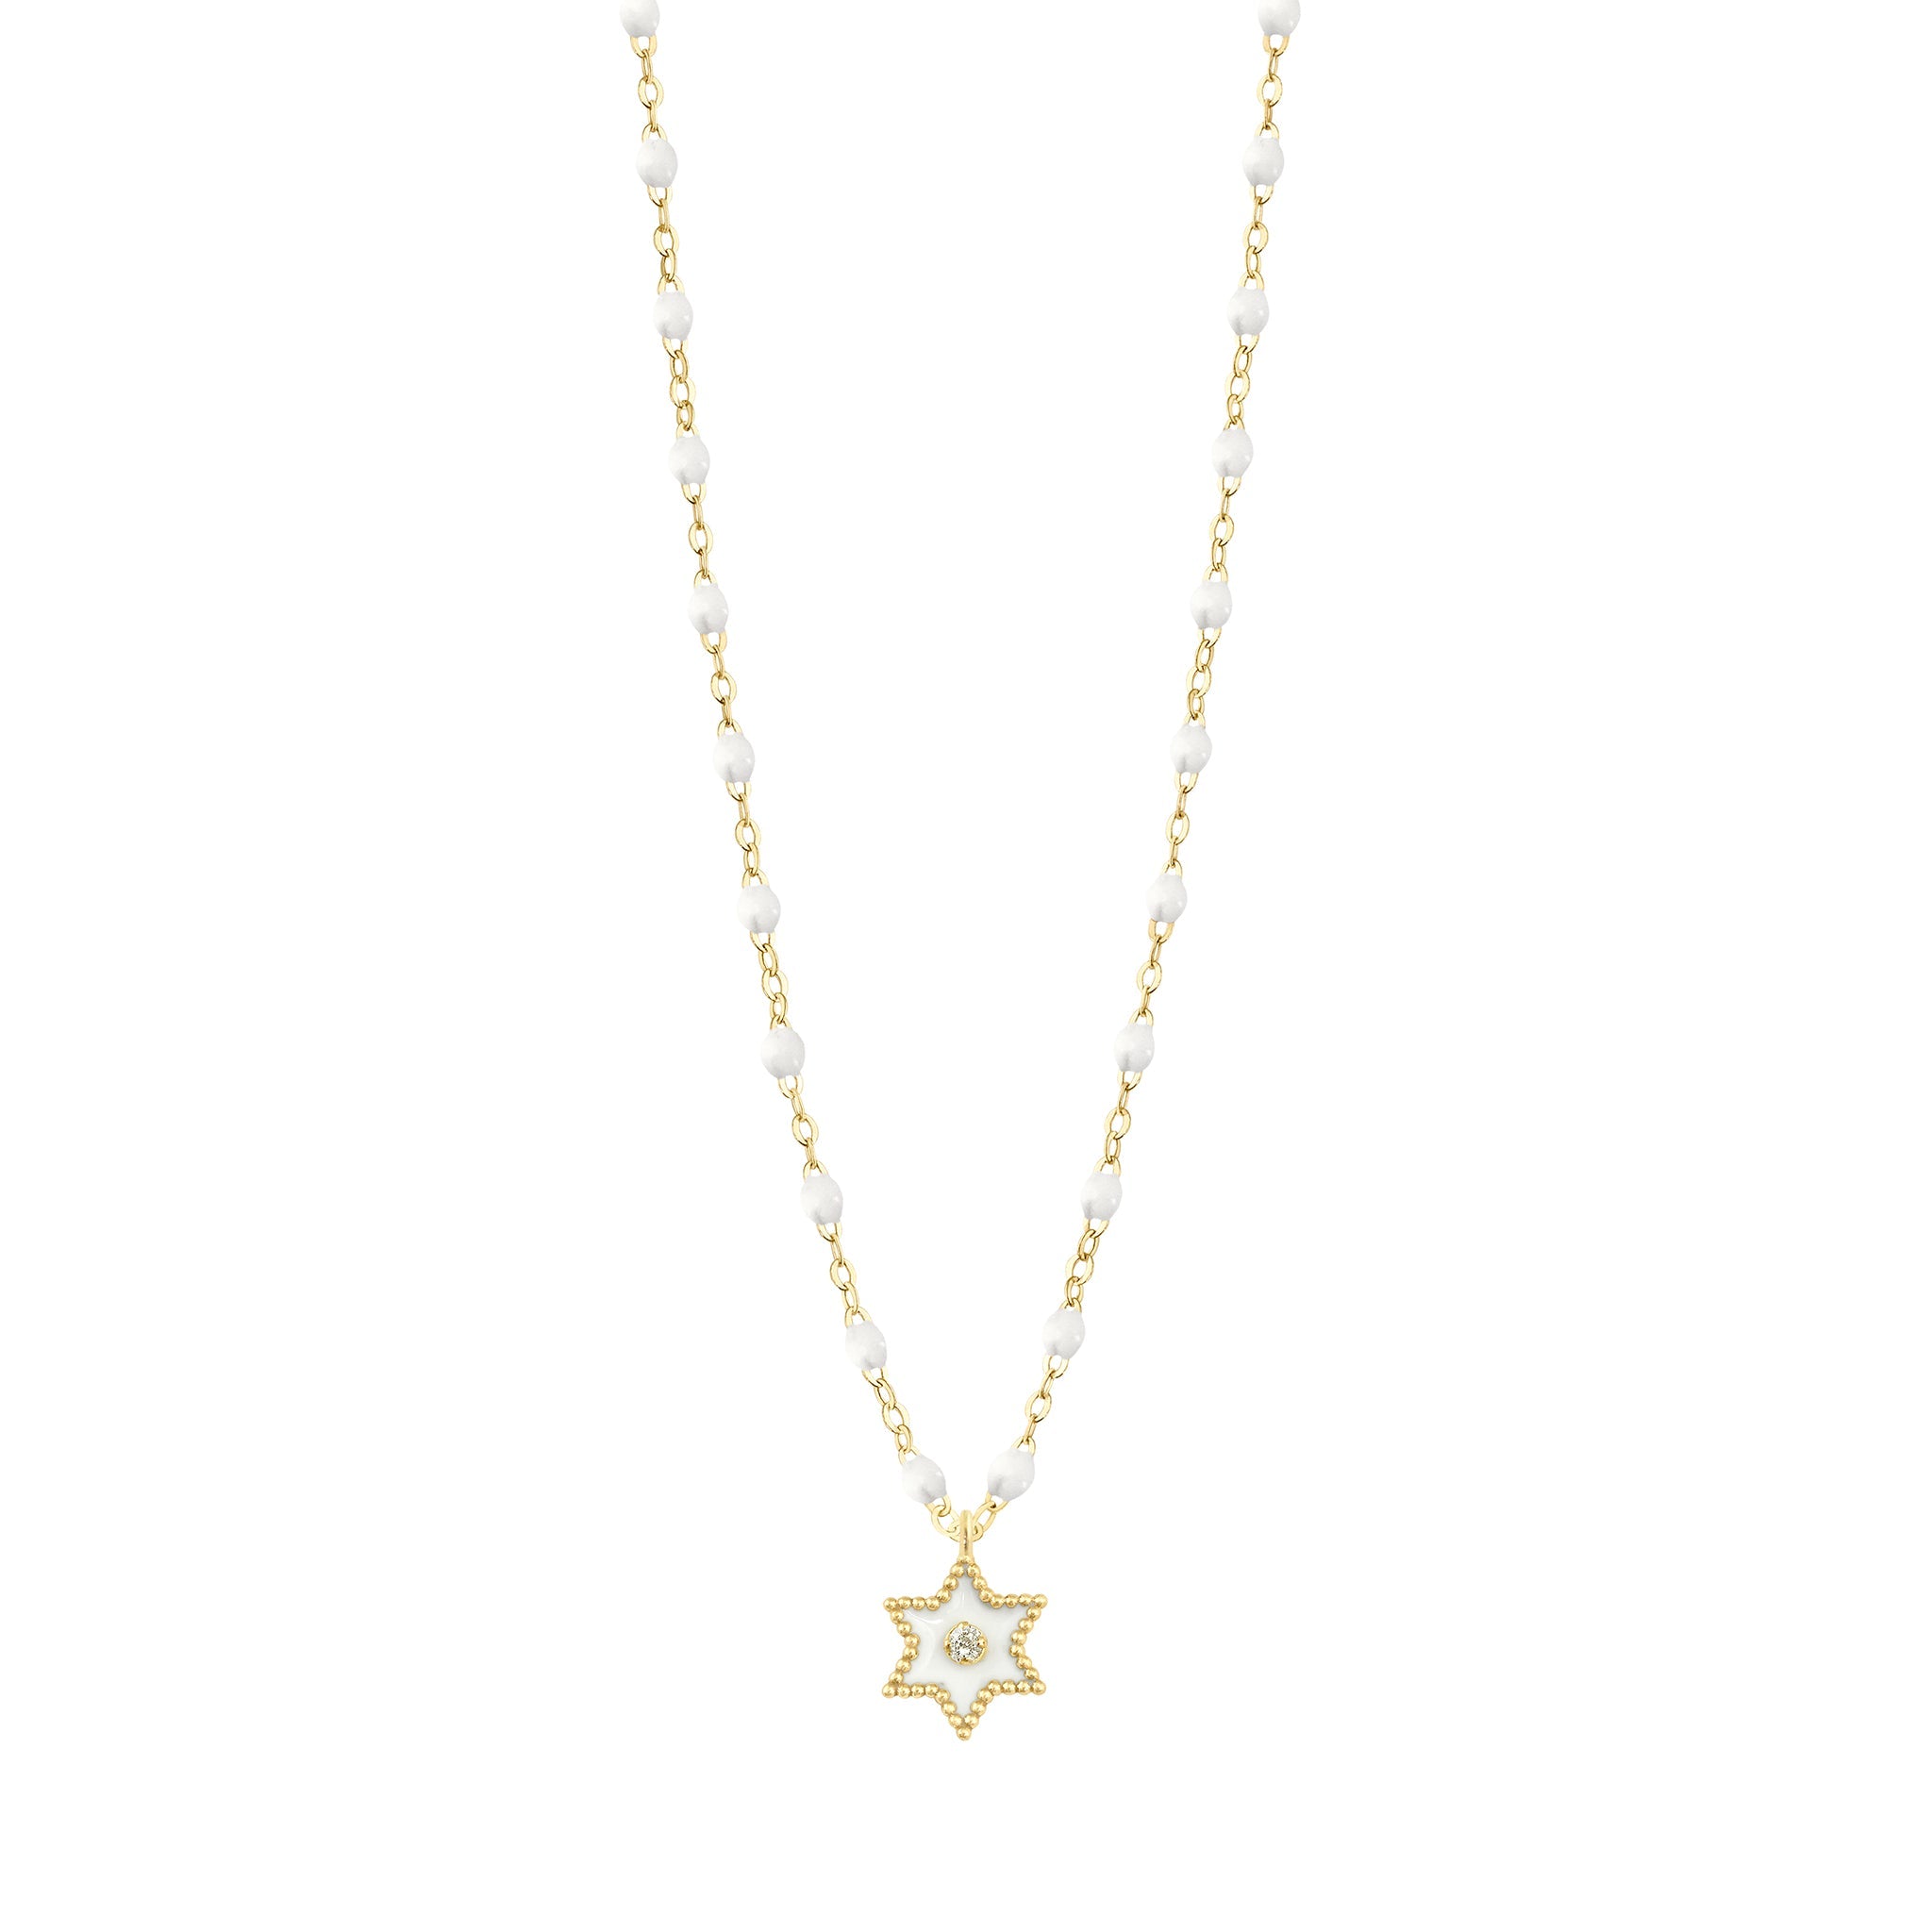 Collier Etoile Star résine blanche, diamant, or jaune, 42 cm pirate Référence :  b1st001j0142di -1